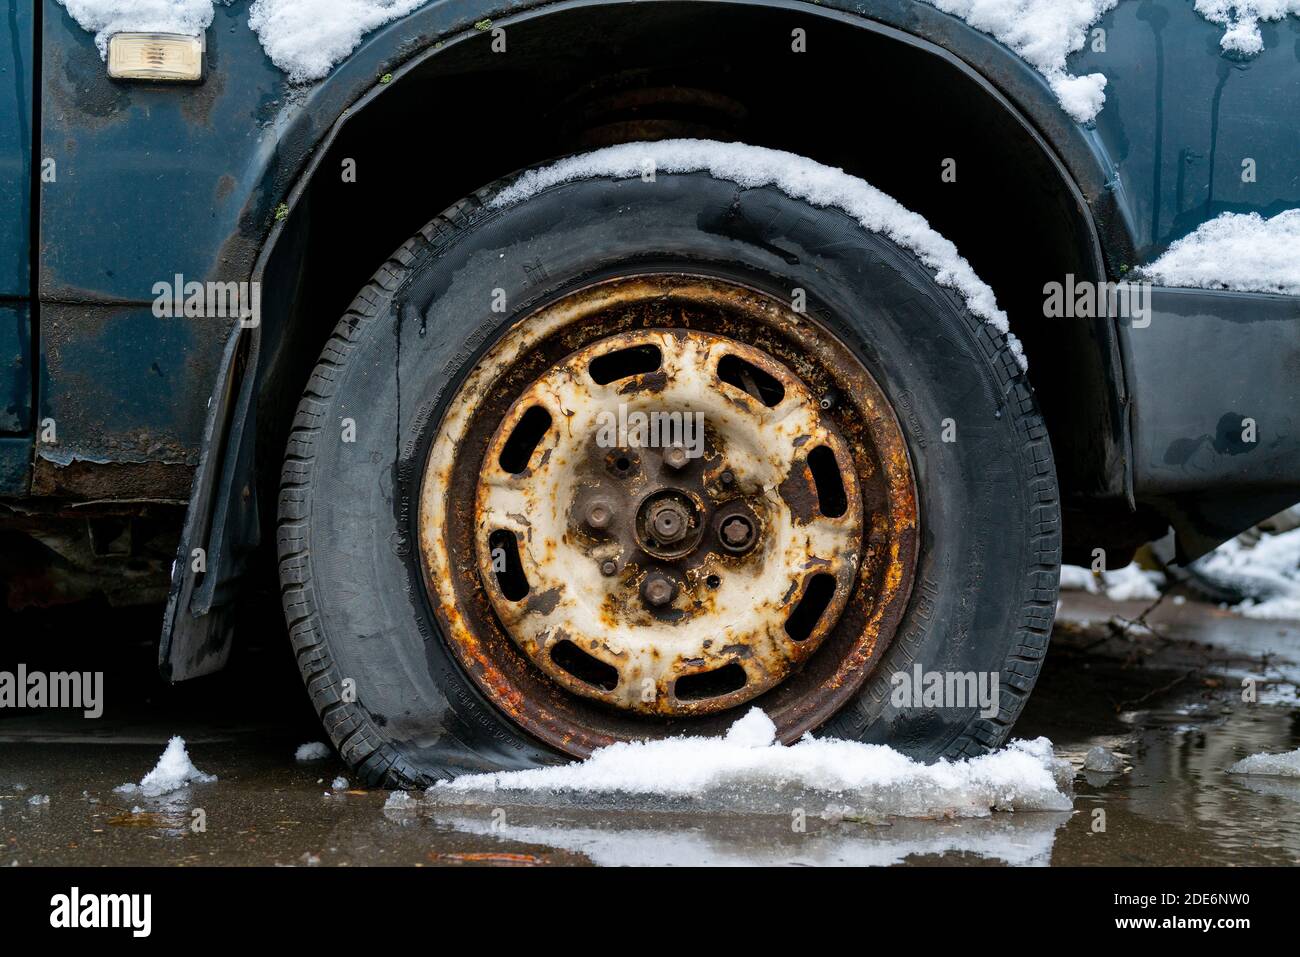 Moscou, Russie. 21 novembre 2020. Pneu crevé d'une vieille voiture dans la neige en hiver. Banque D'Images